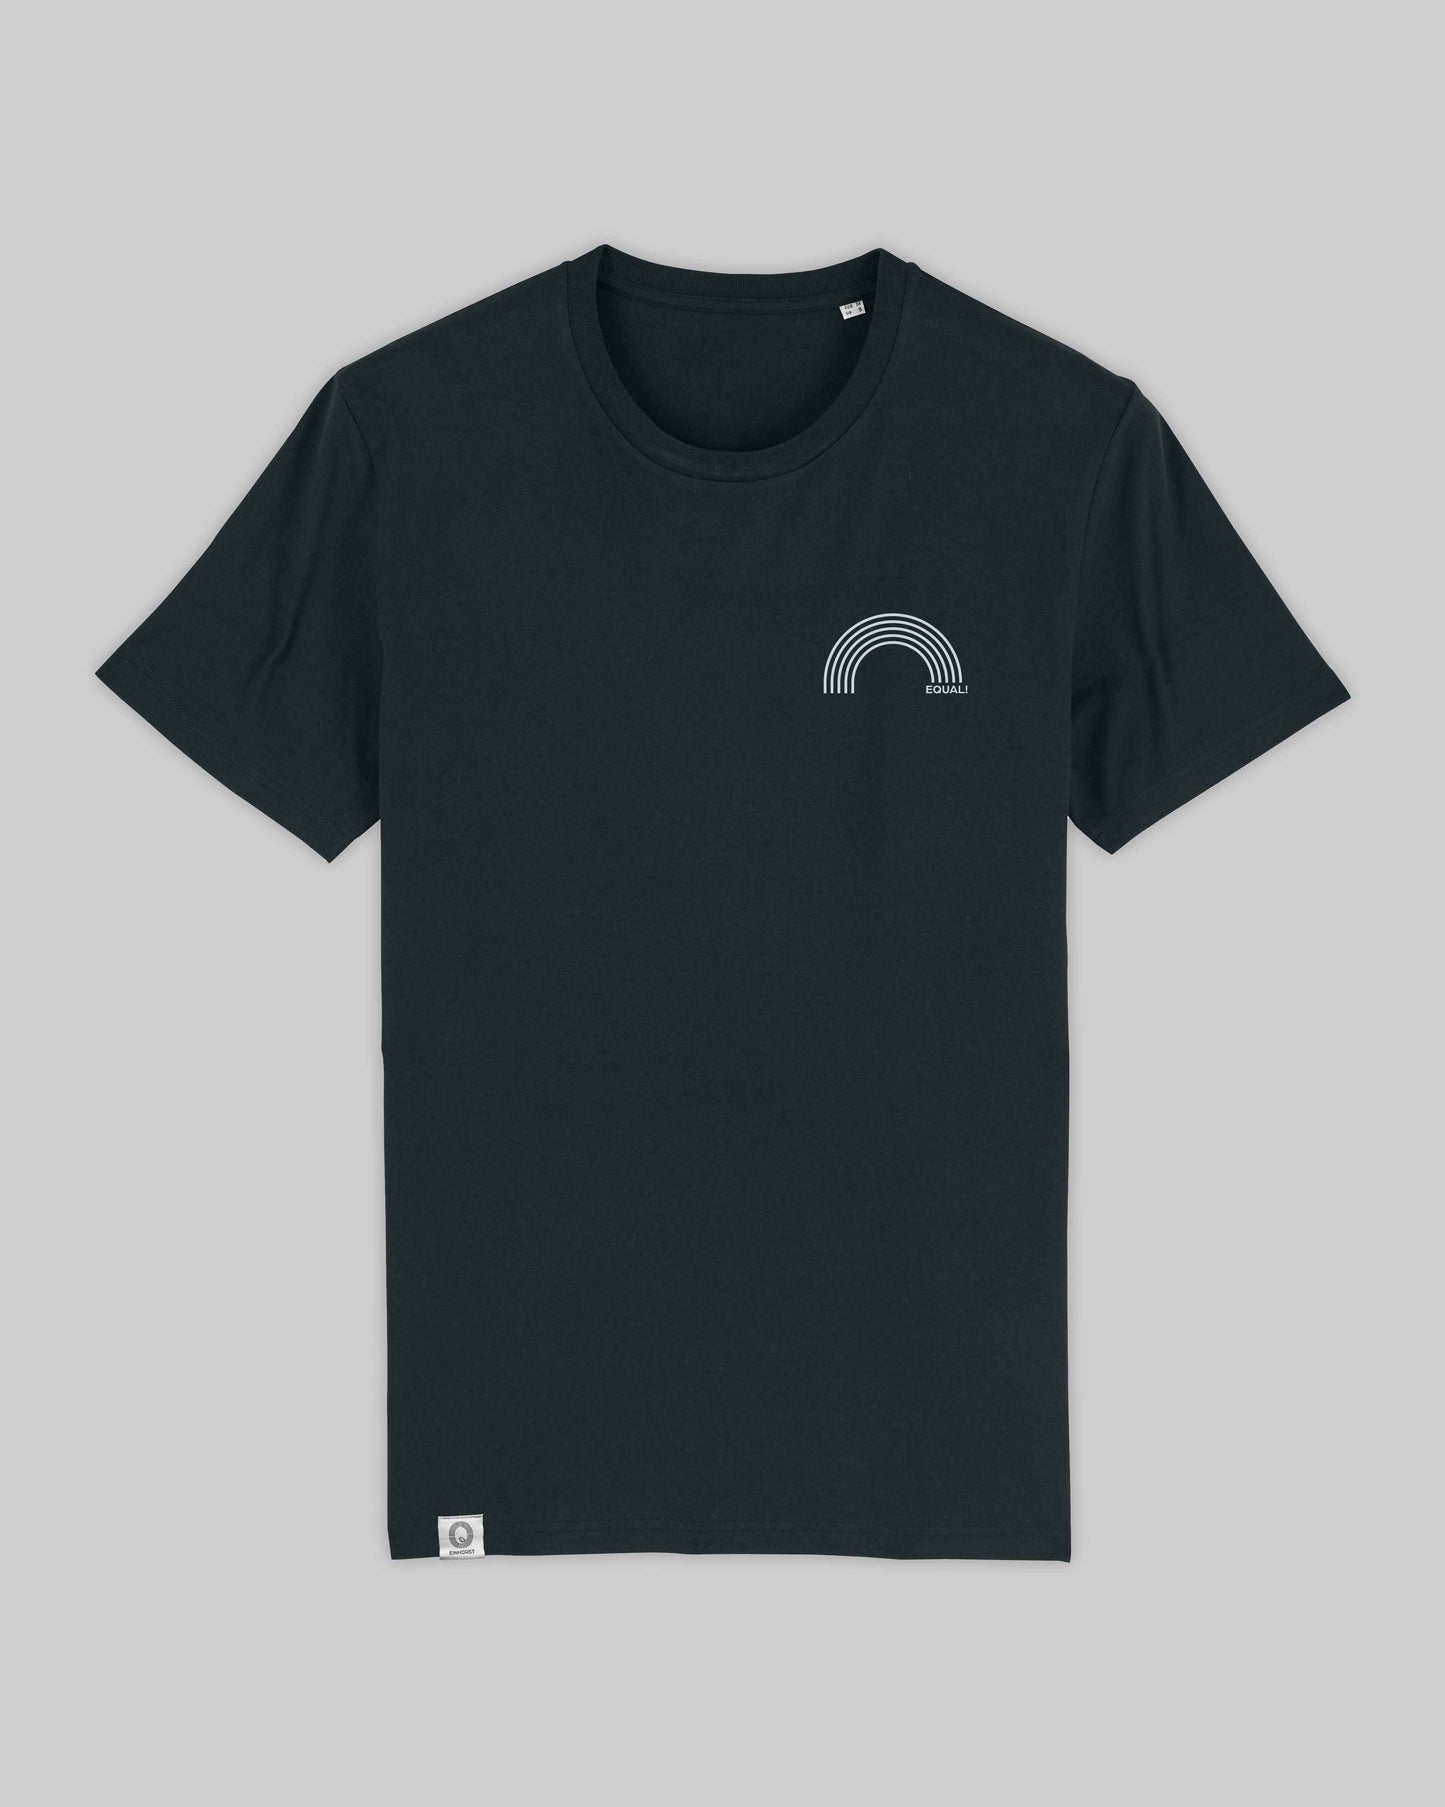 EINHORST® unisex Organic Shirt in Schwarz mit dem Motiv "equal-Regenbogen" in der Kombination weißer Regenbogen mit weißer Schrift, Bild von Shirt von vorne